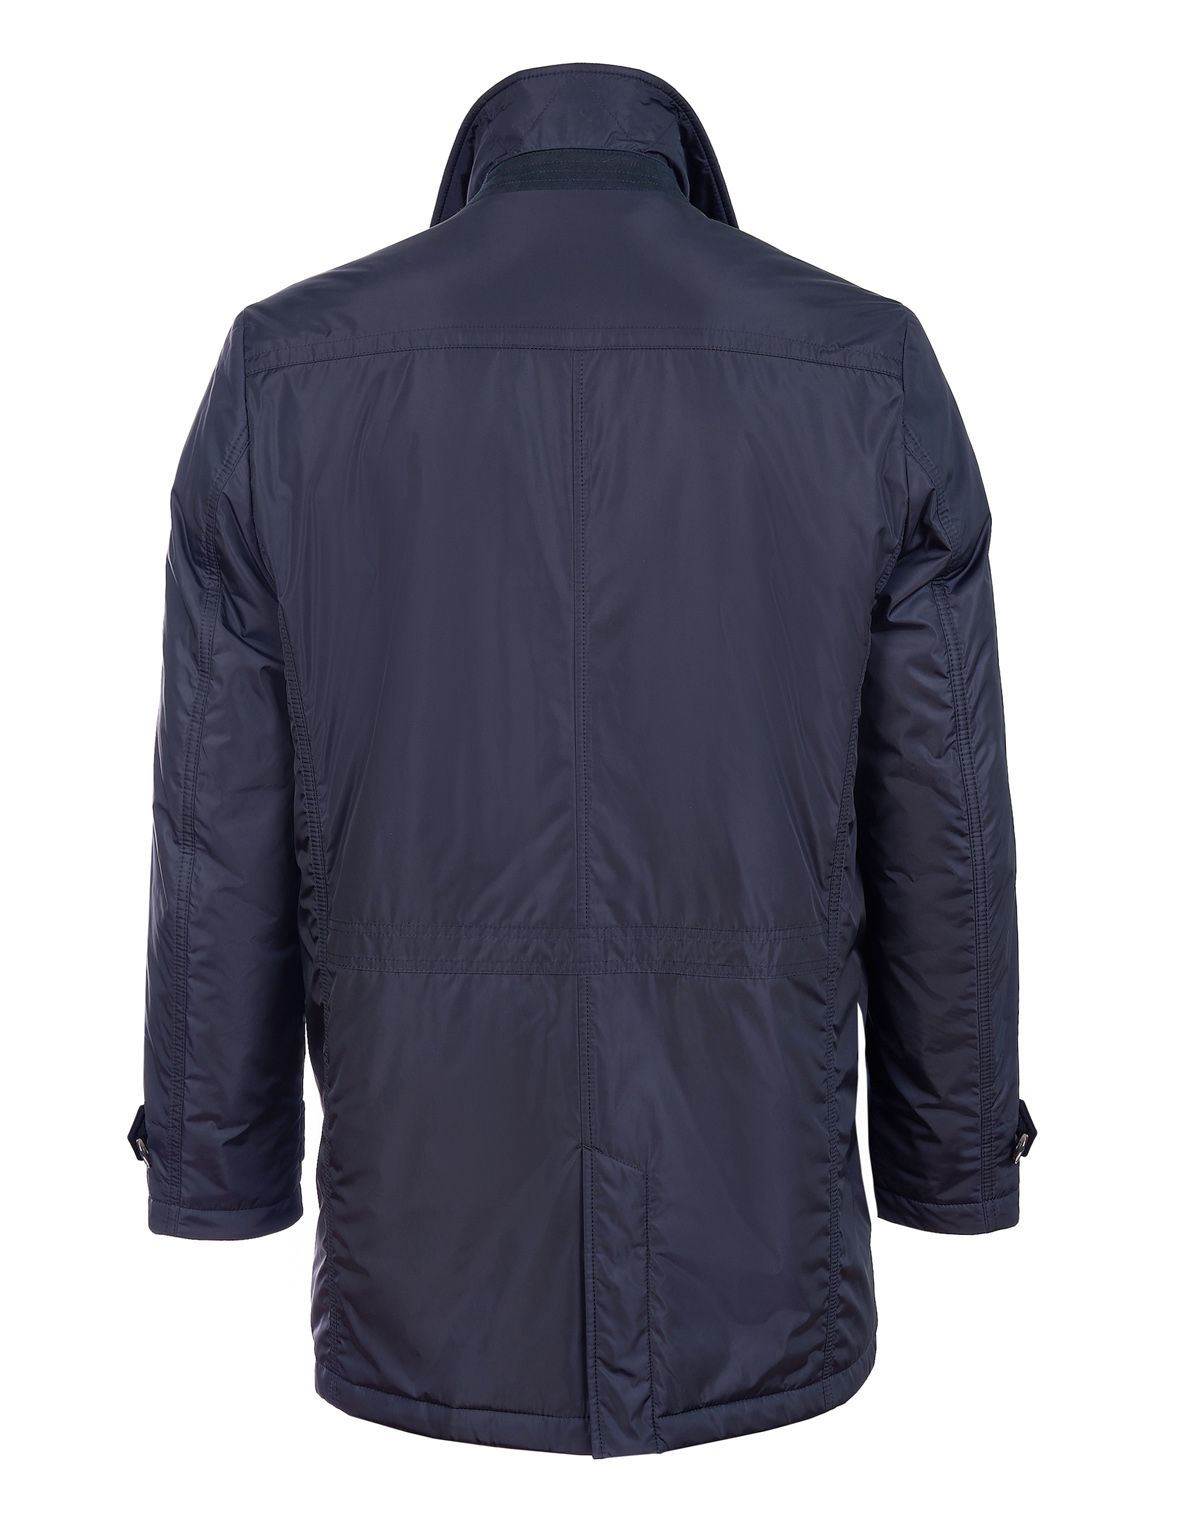 Куртка-плащ мужская MEUCCI утеплённая с манишкой | купить в интернет-магазине Olymp-Men